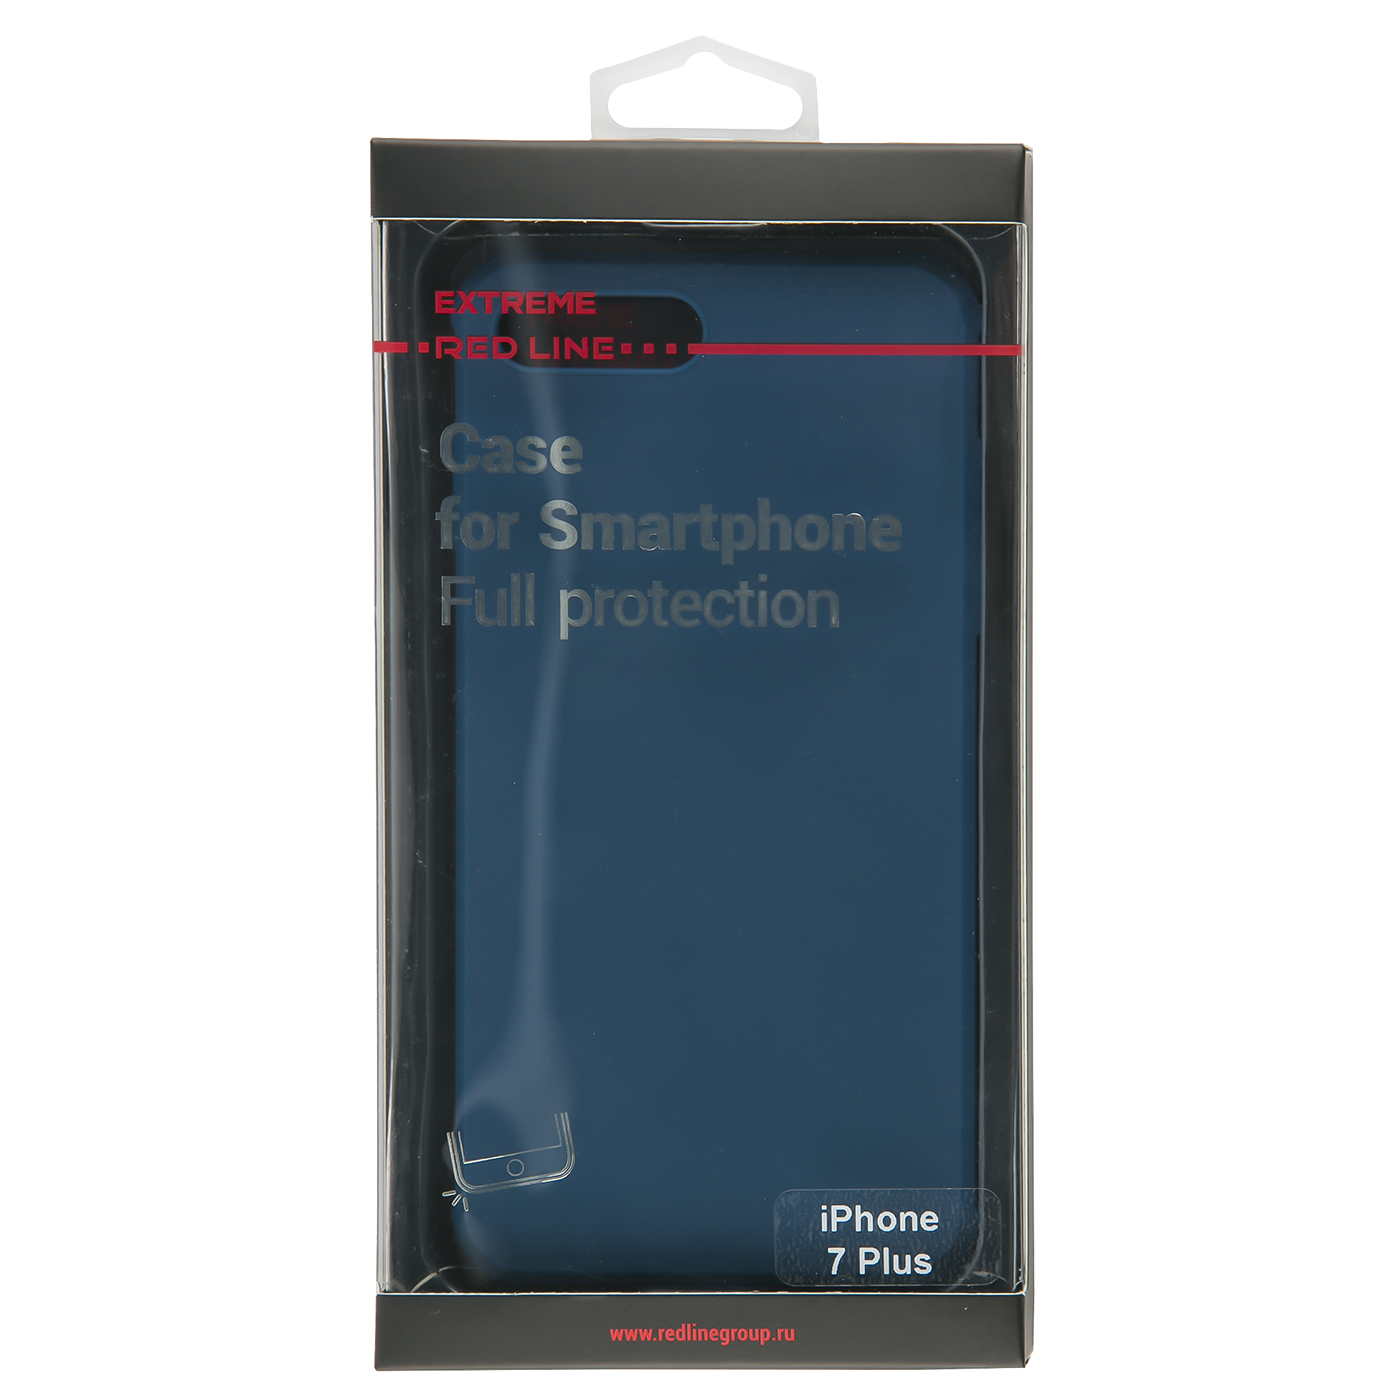 Защитный чехол Red Line Extreme для iPhone 7 Plus